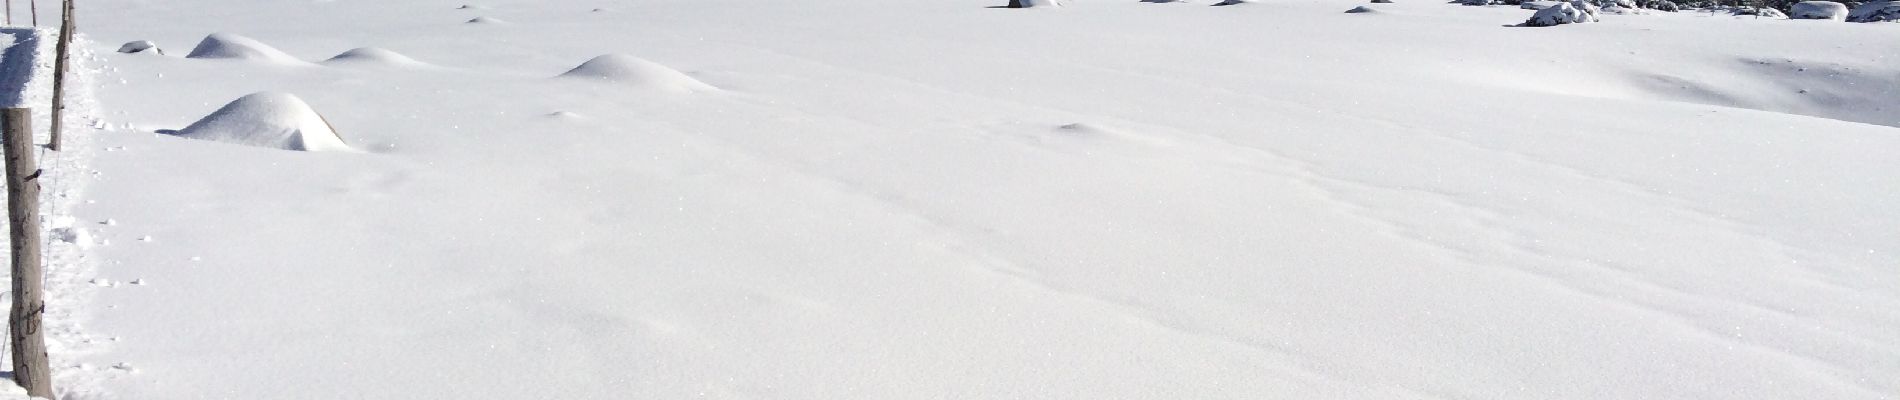 Trail Snowshoes Les Angles - Pla del mir lac d’aude bis  - Photo